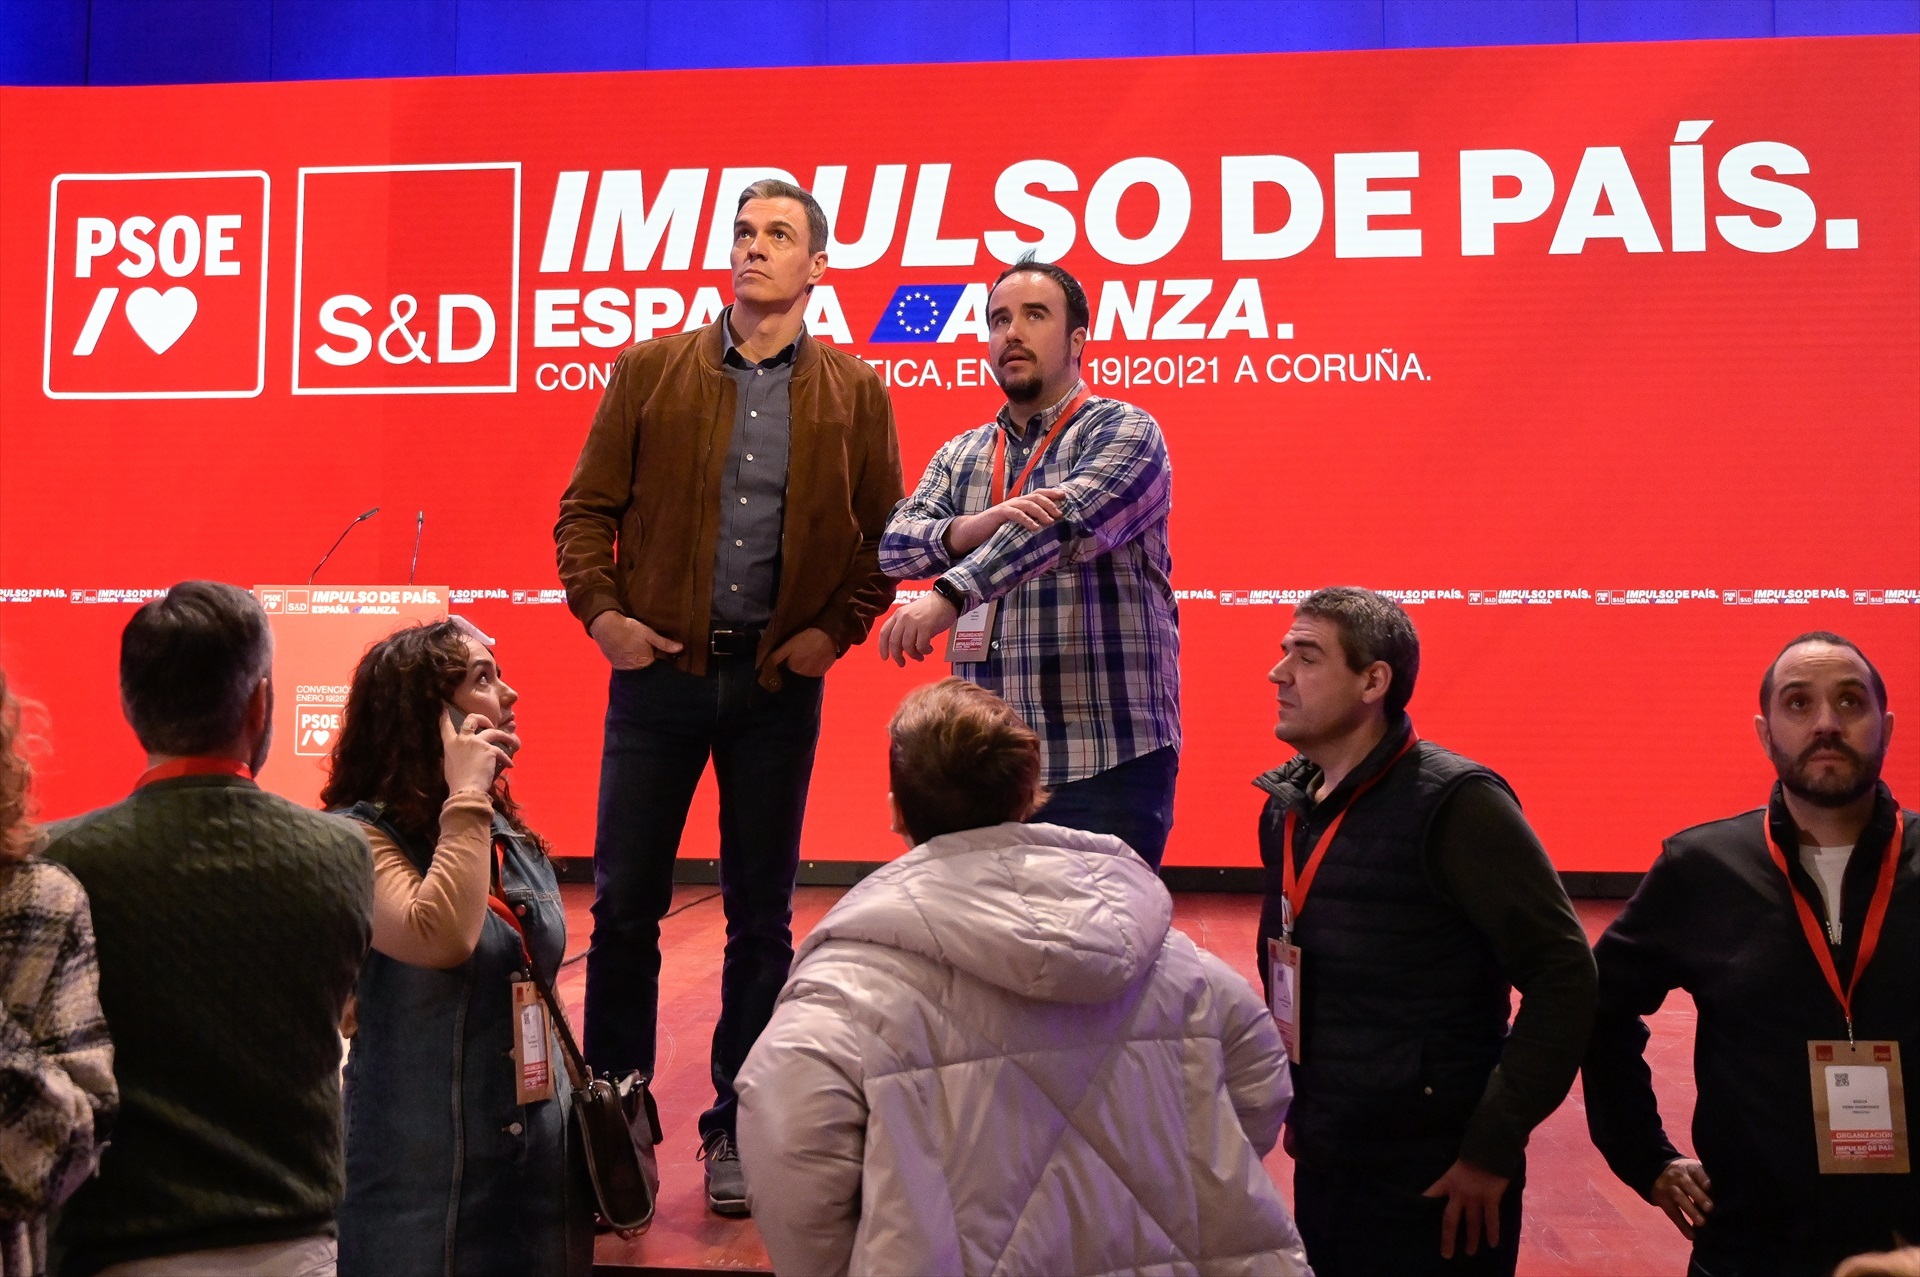 Interrupció abrupta del discurs de Sánchez per una emergència mèdica a la convenció política del PSOE